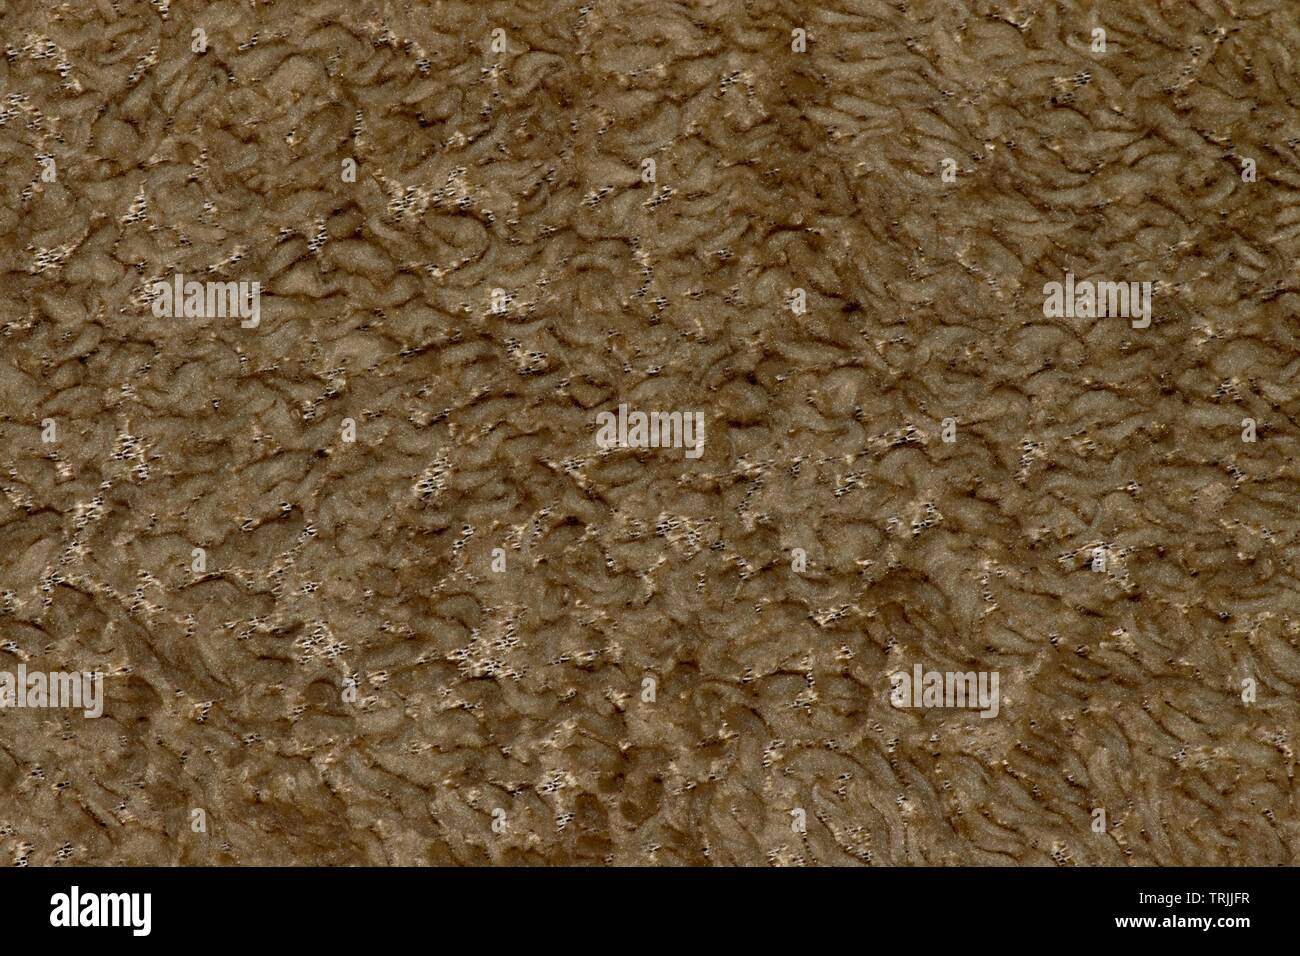 La laine de couleur tan d'une veste d'hiver, en mettant en évidence les textures et motifs. Banque D'Images